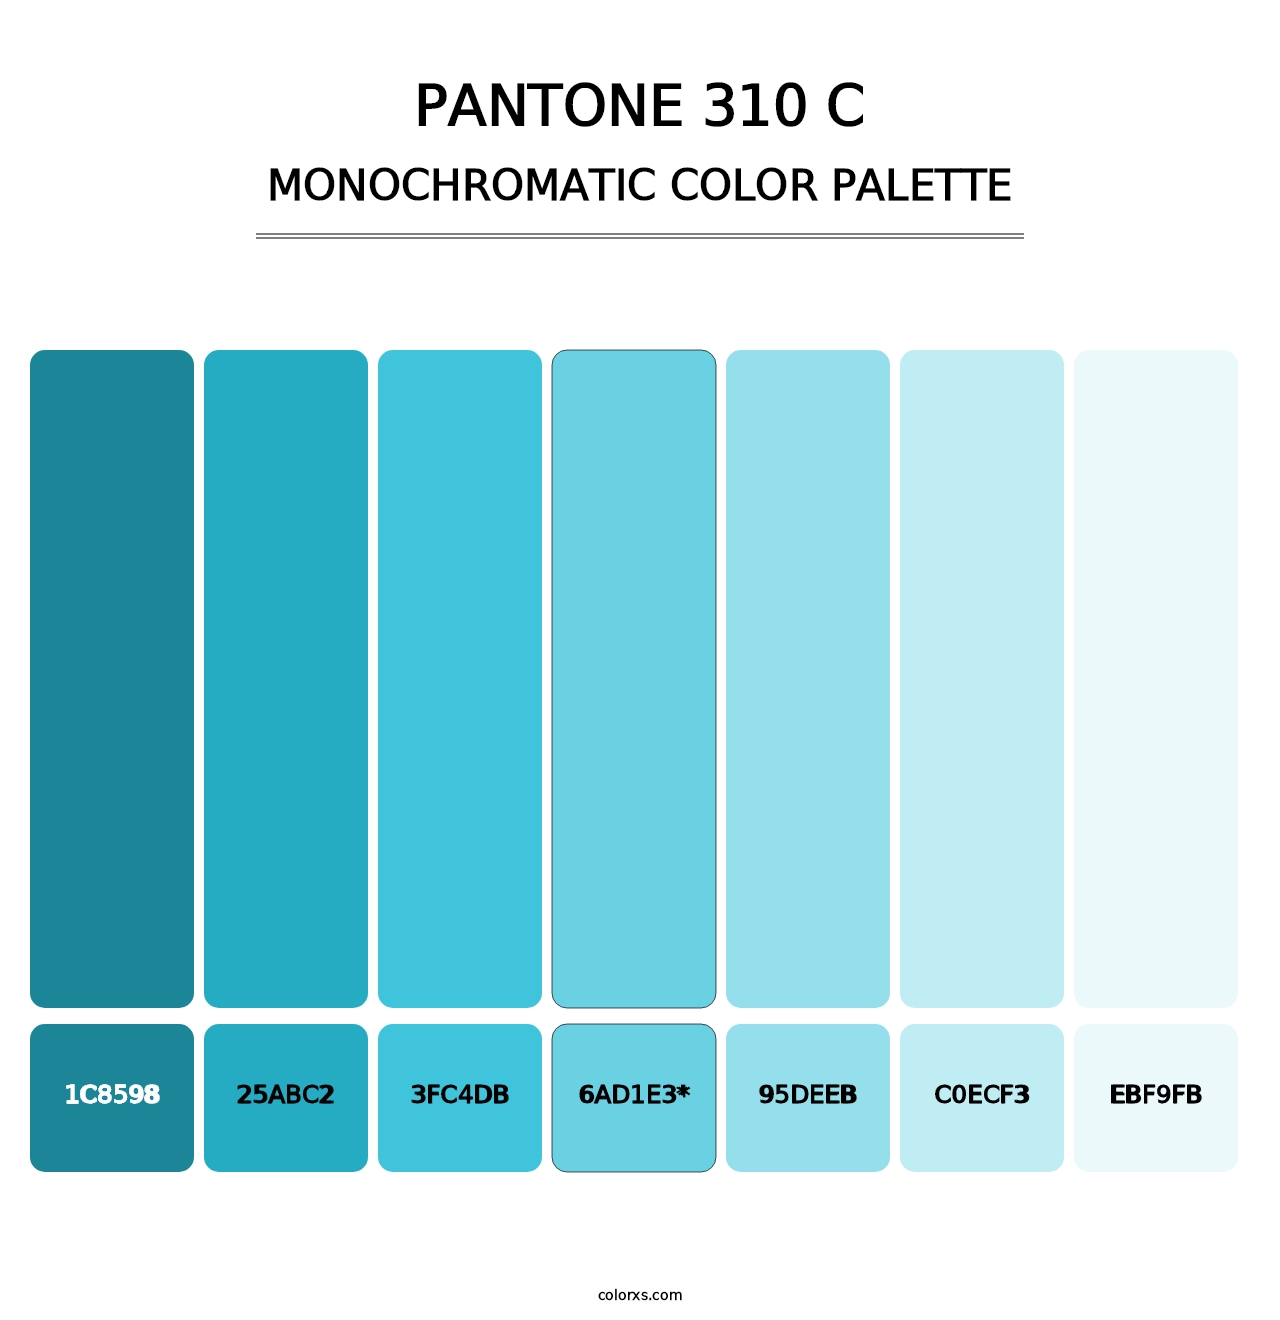 PANTONE 310 C - Monochromatic Color Palette